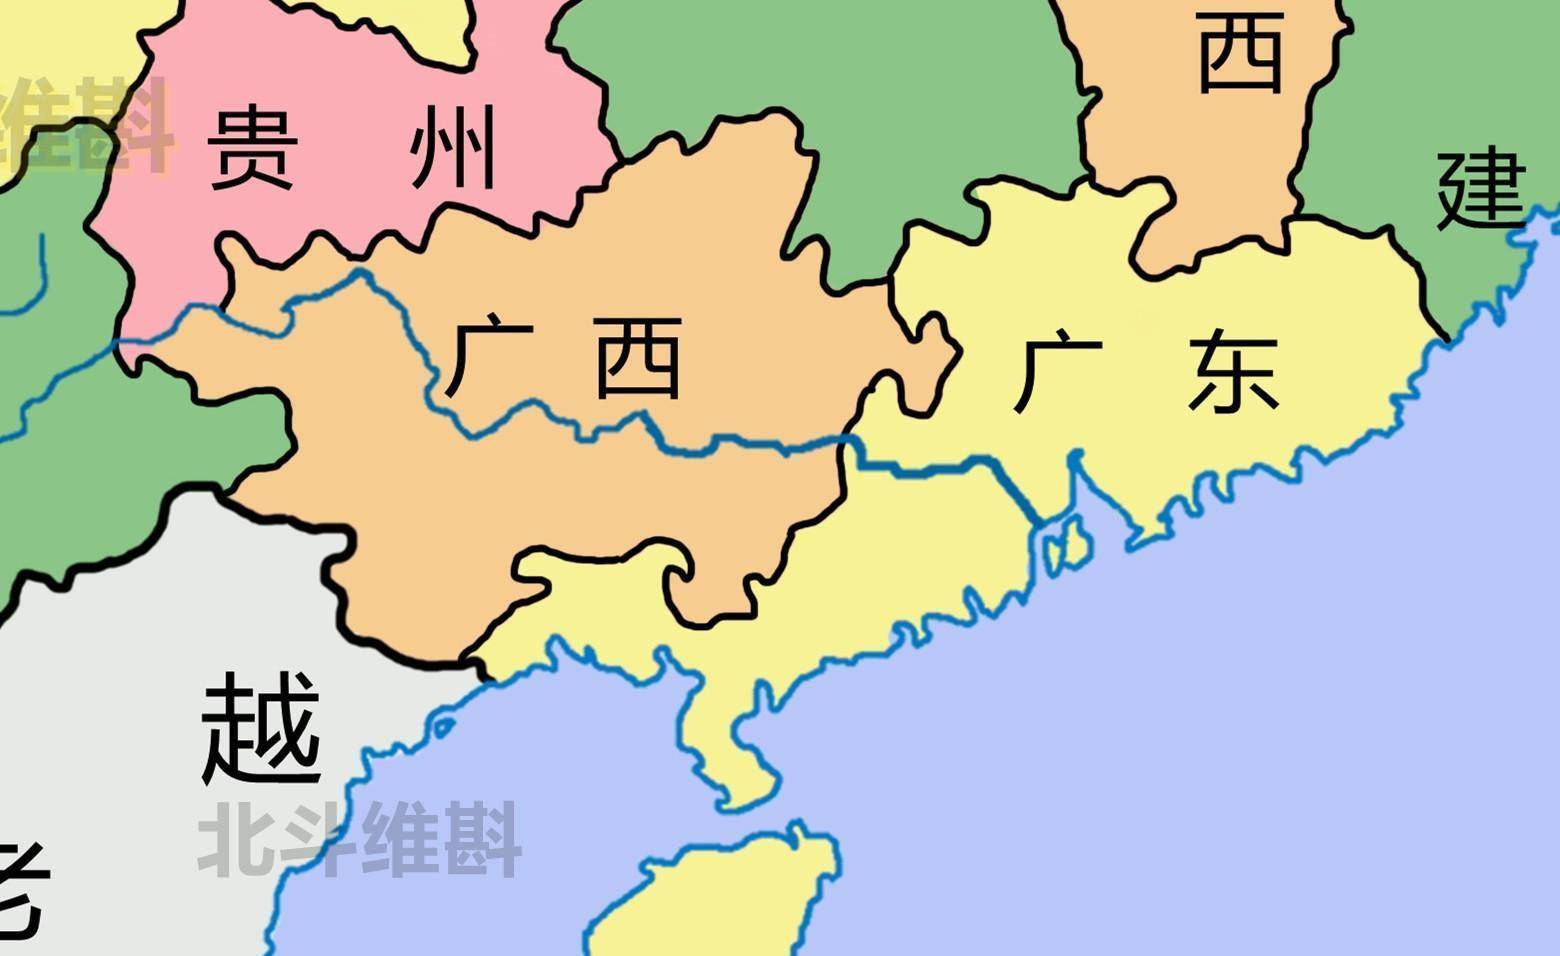 珠江流经省份图片